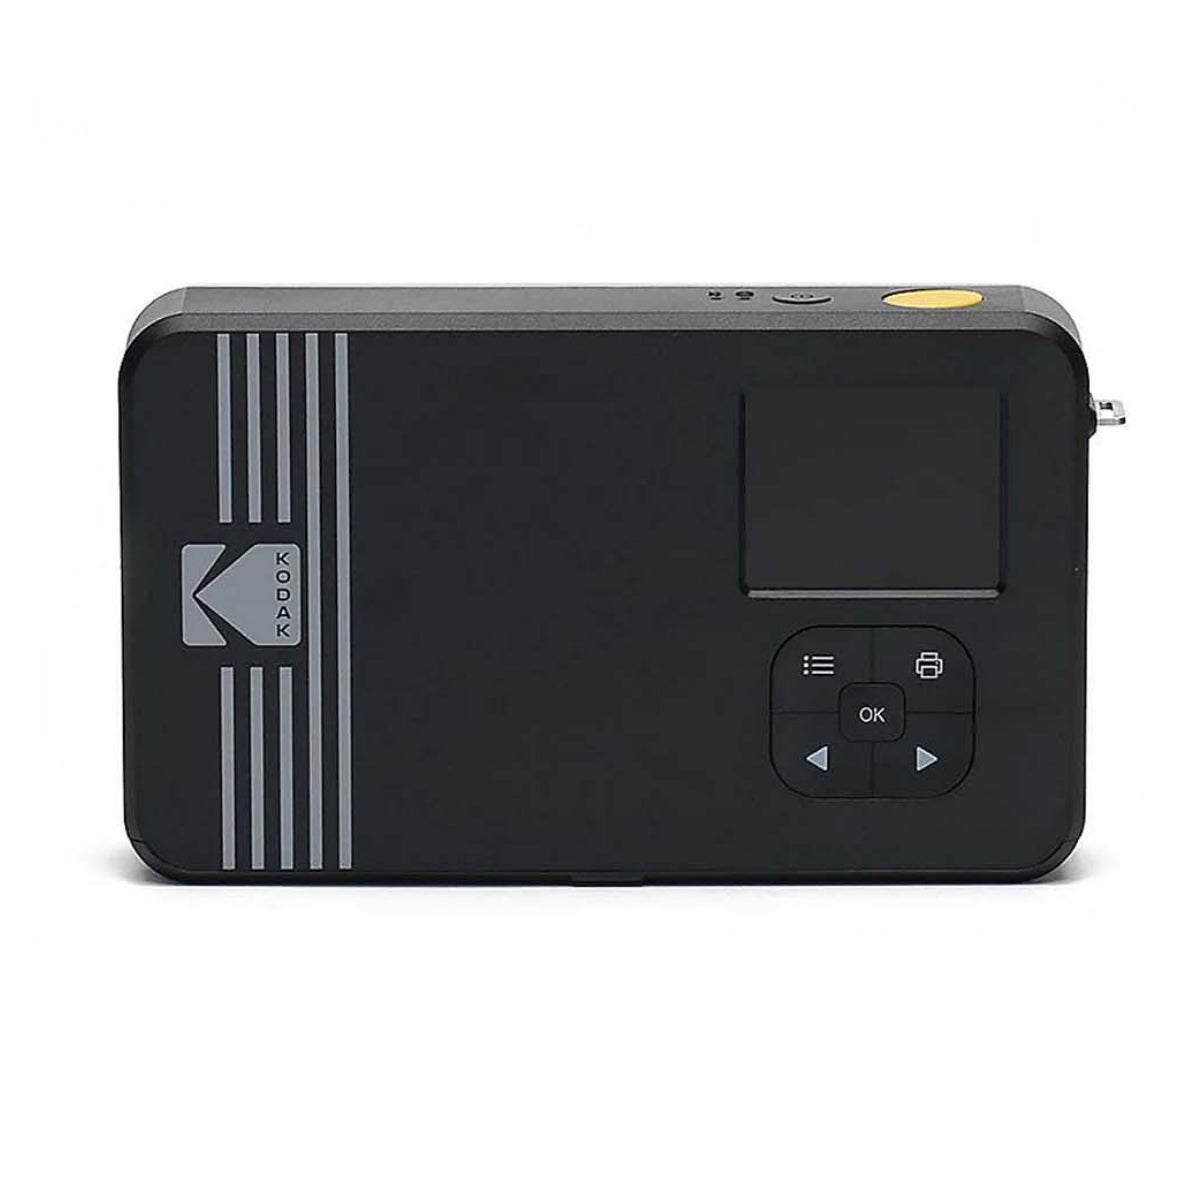 מצלמת פיתוח מיידי Kodak Mini Shot 2 Retro C210R לבן